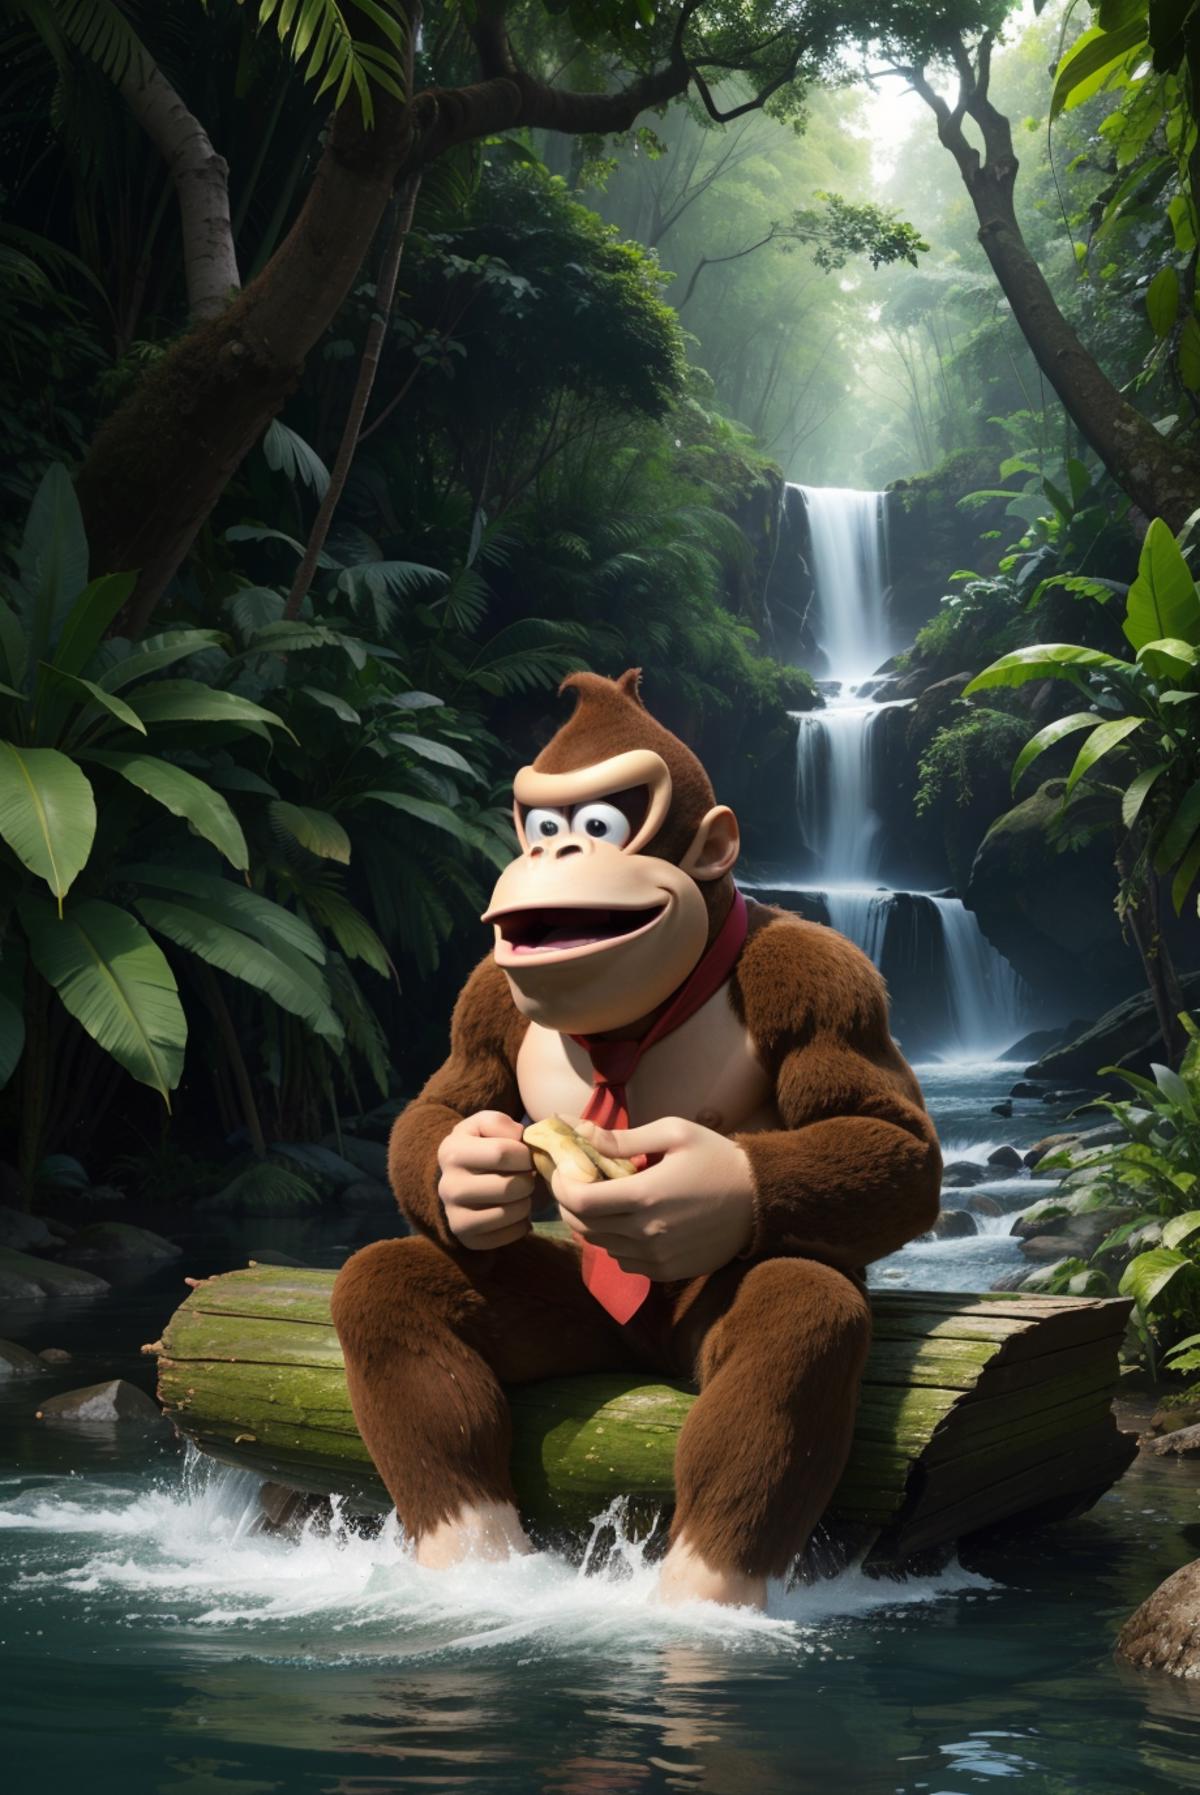 Donkey Kong | 3 character LoRA image by wikkitikki